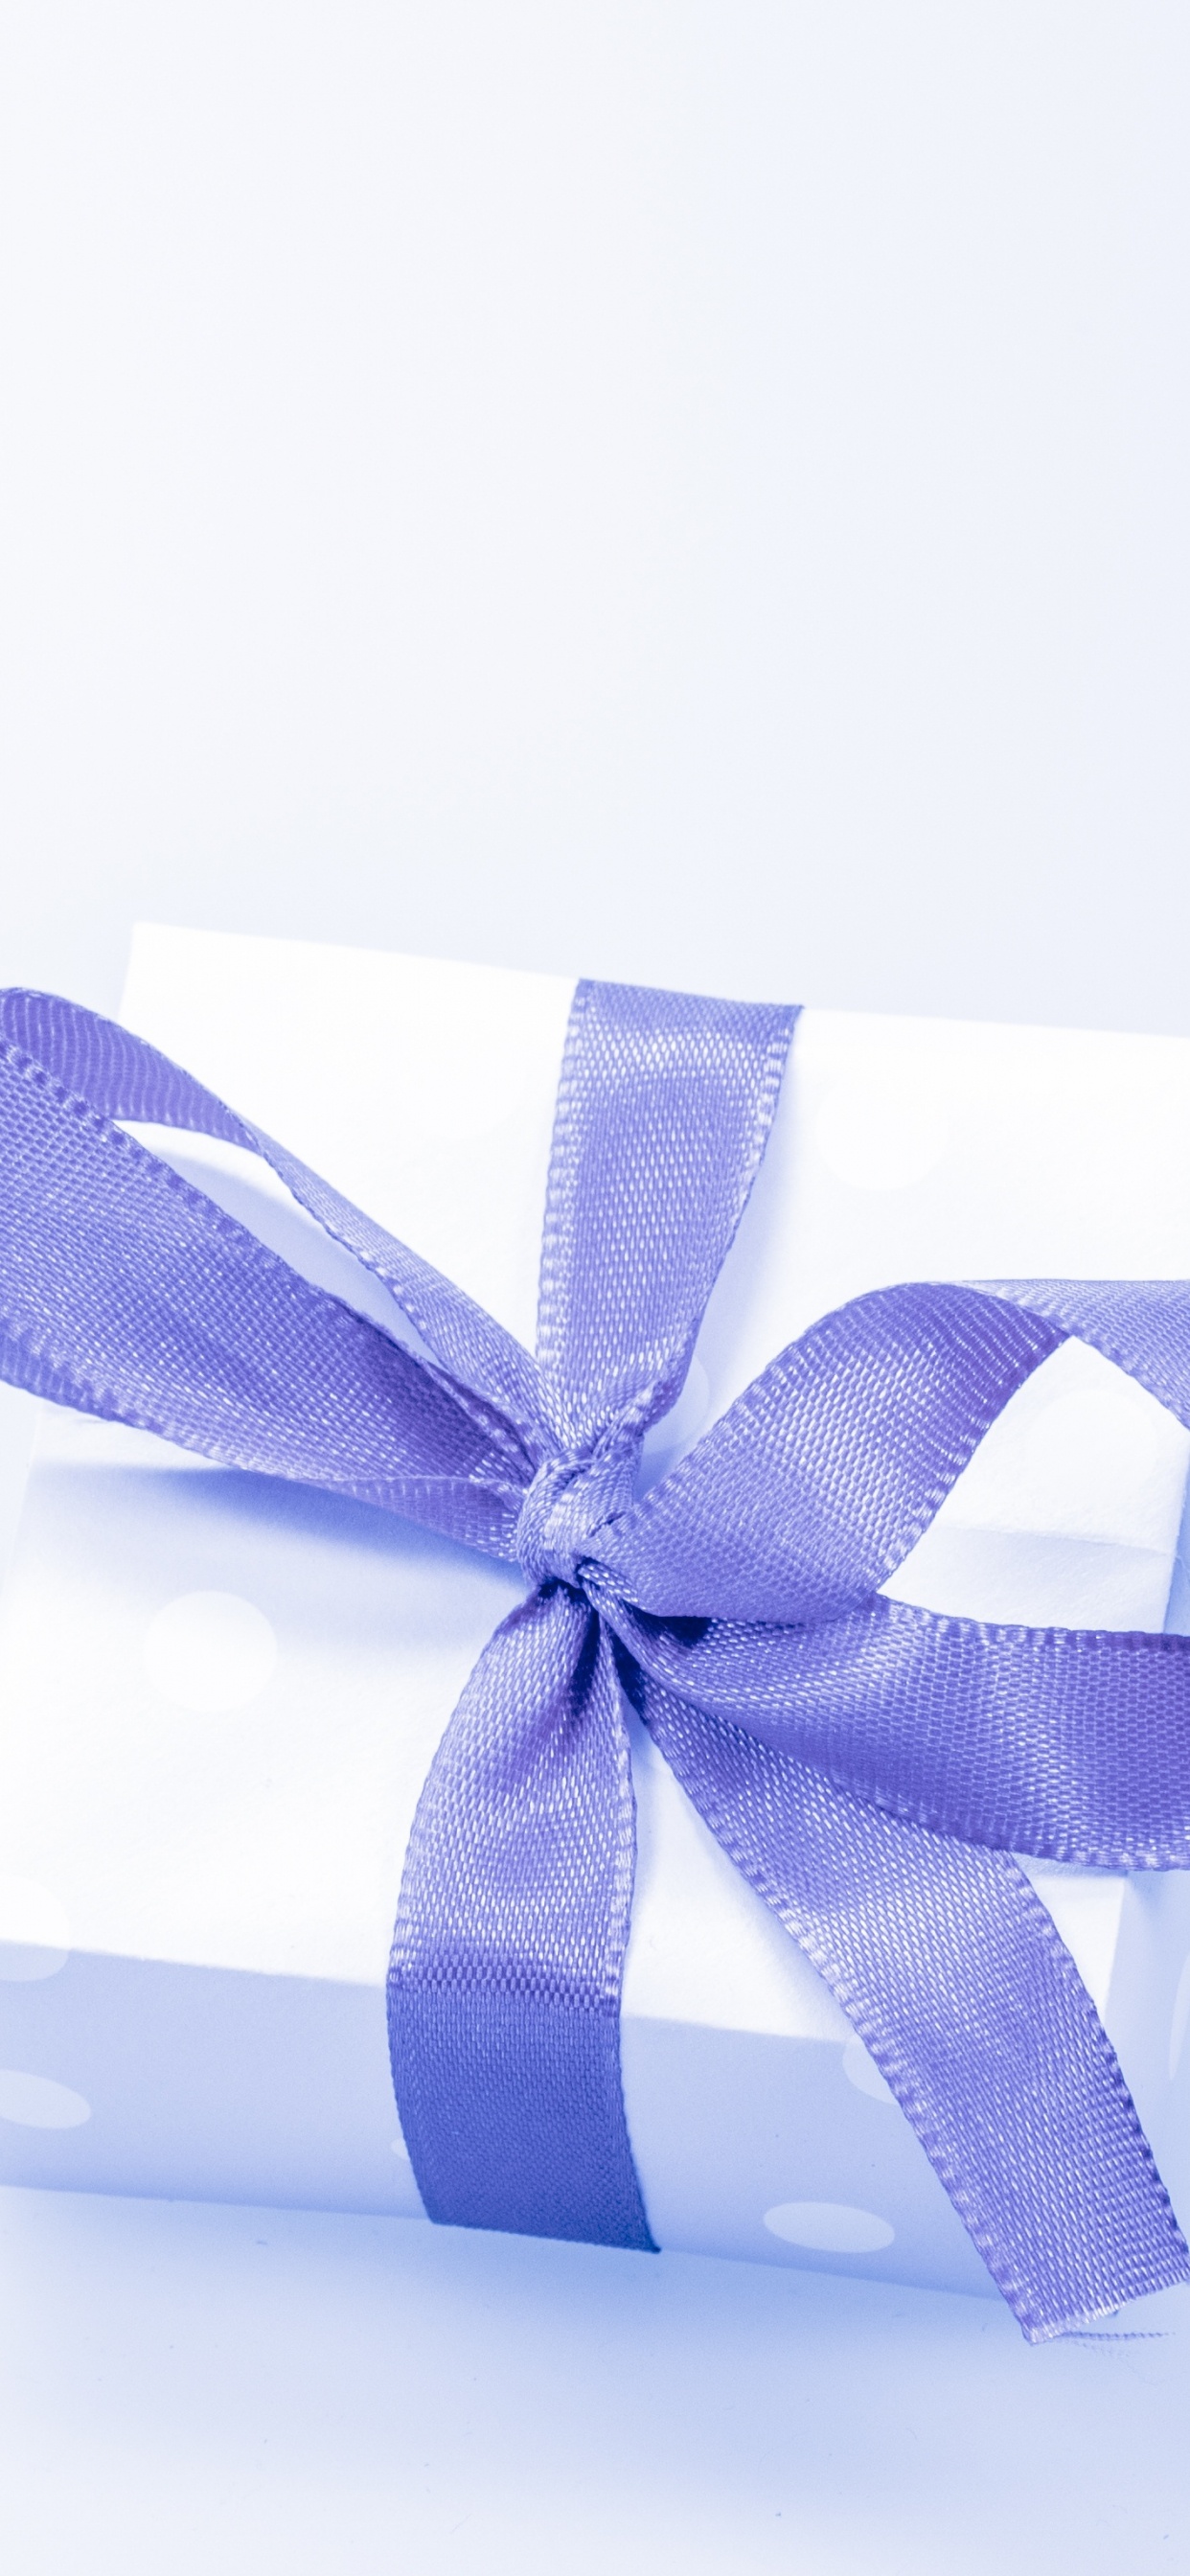 礼物, 礼品卡, 礼品包装, 丝带, 紫罗兰色 壁纸 1242x2688 允许